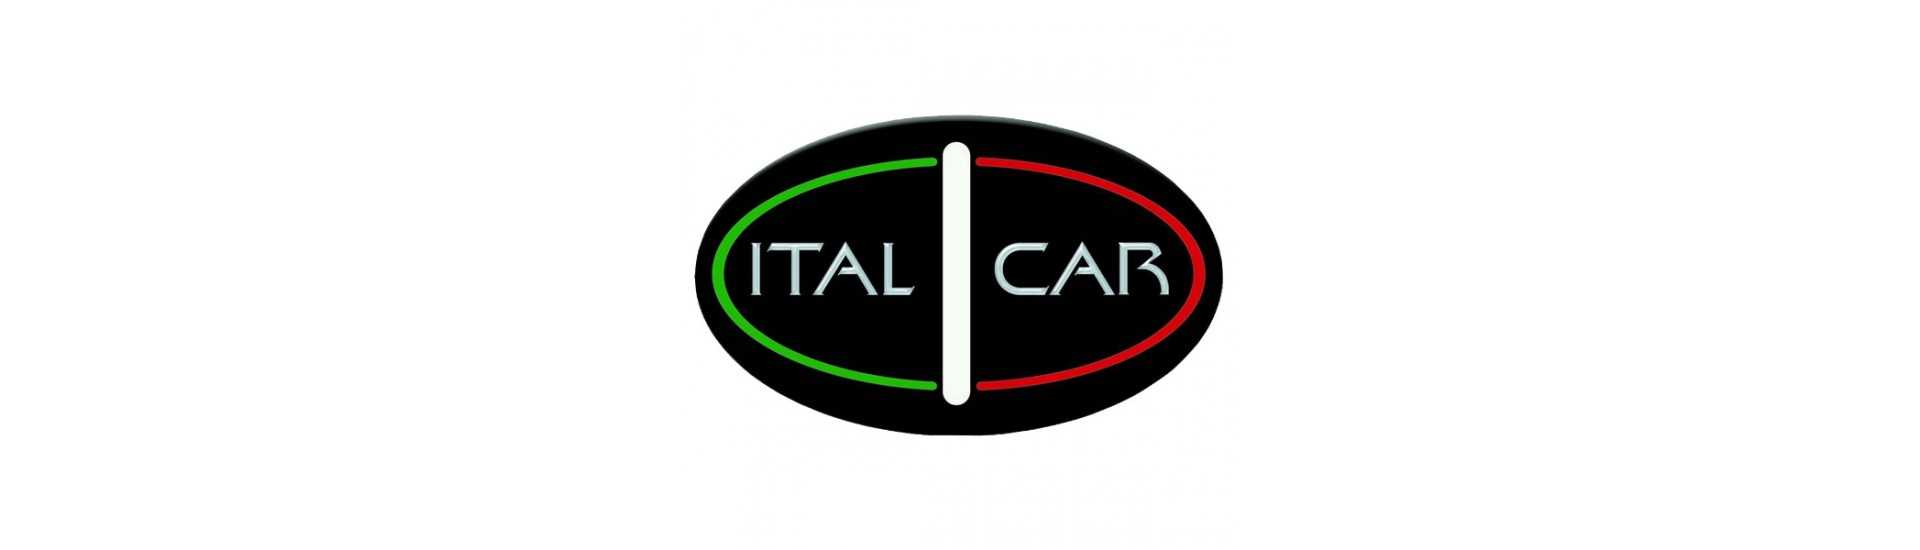 Geschwindigkeitsbox zum besten Preis für Auto ohne Lizenz Italcar